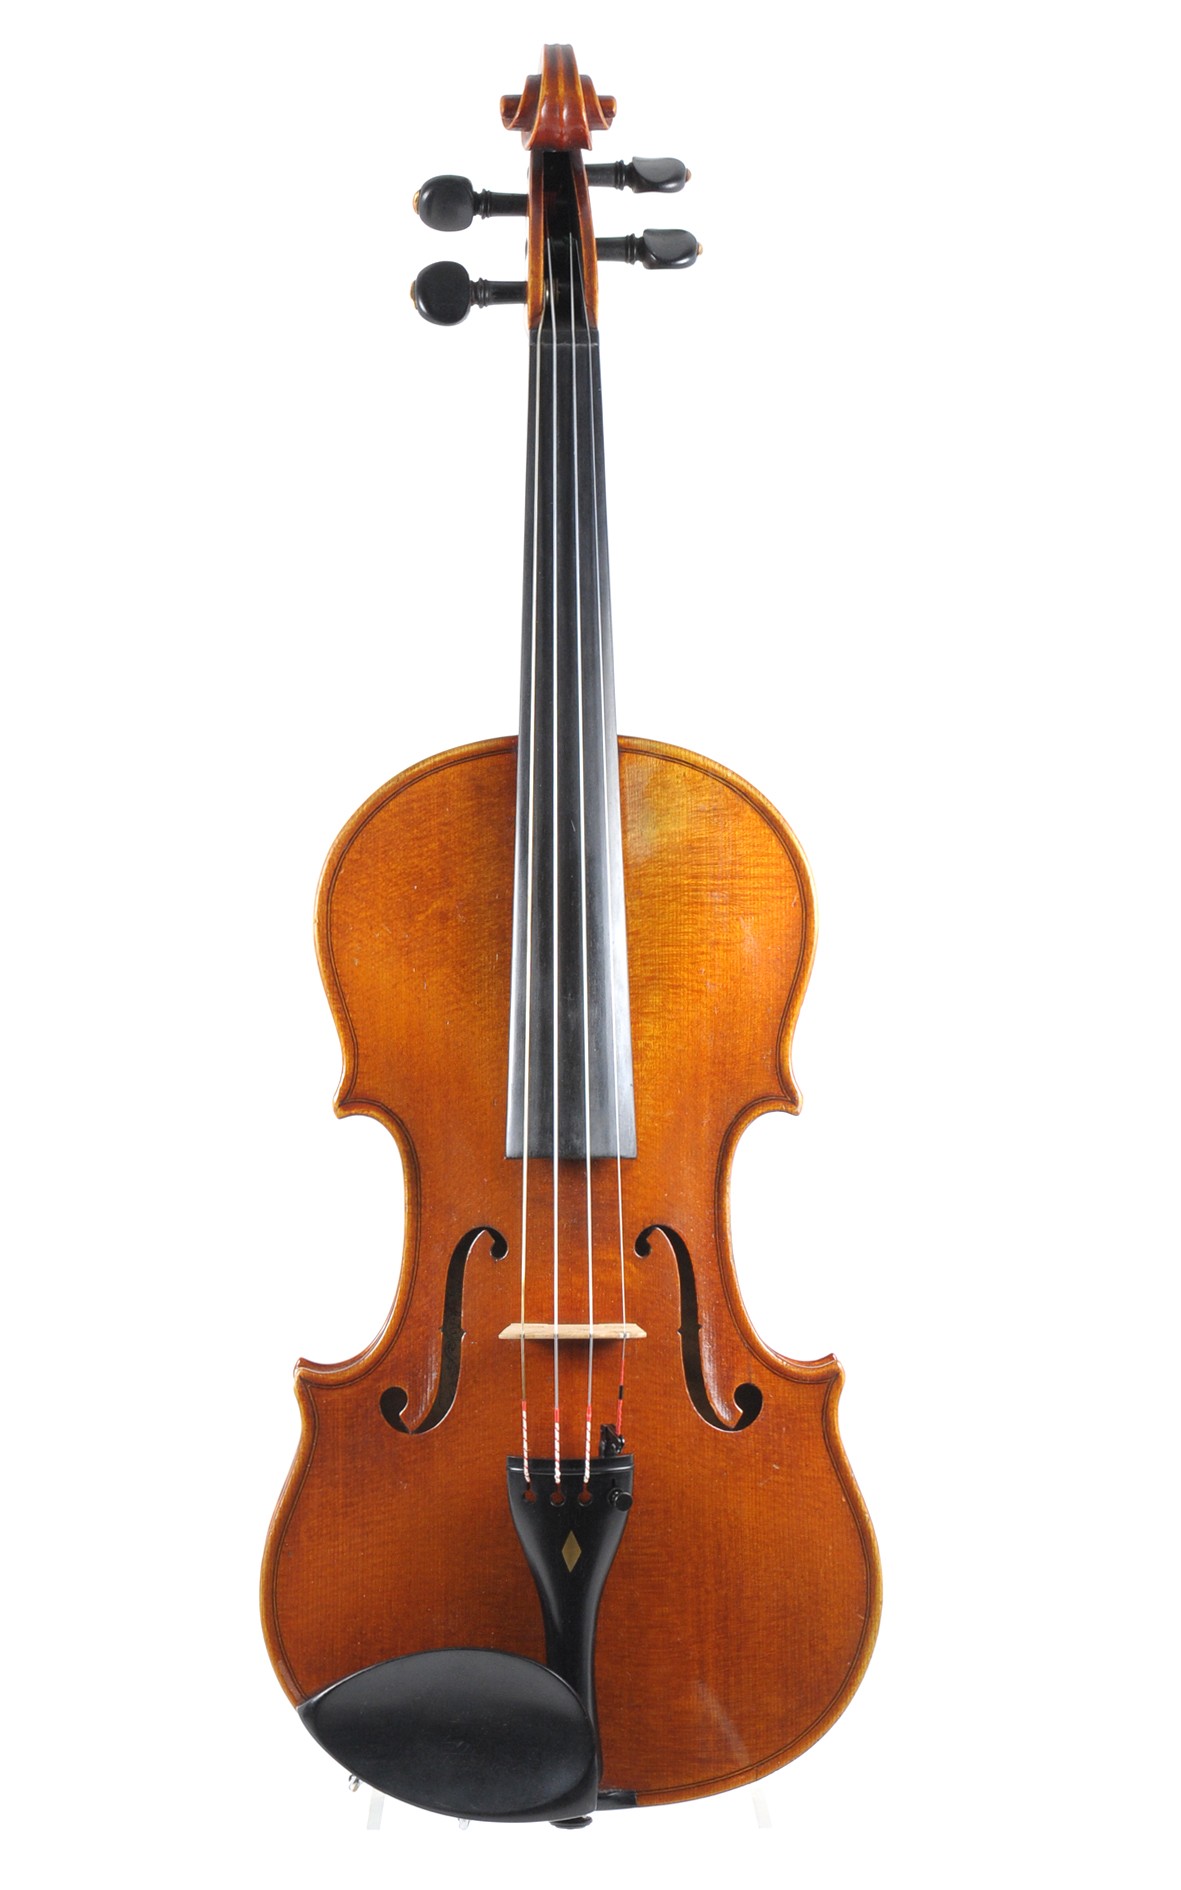 Swiss Zurich violin by Gustav Altheim - table